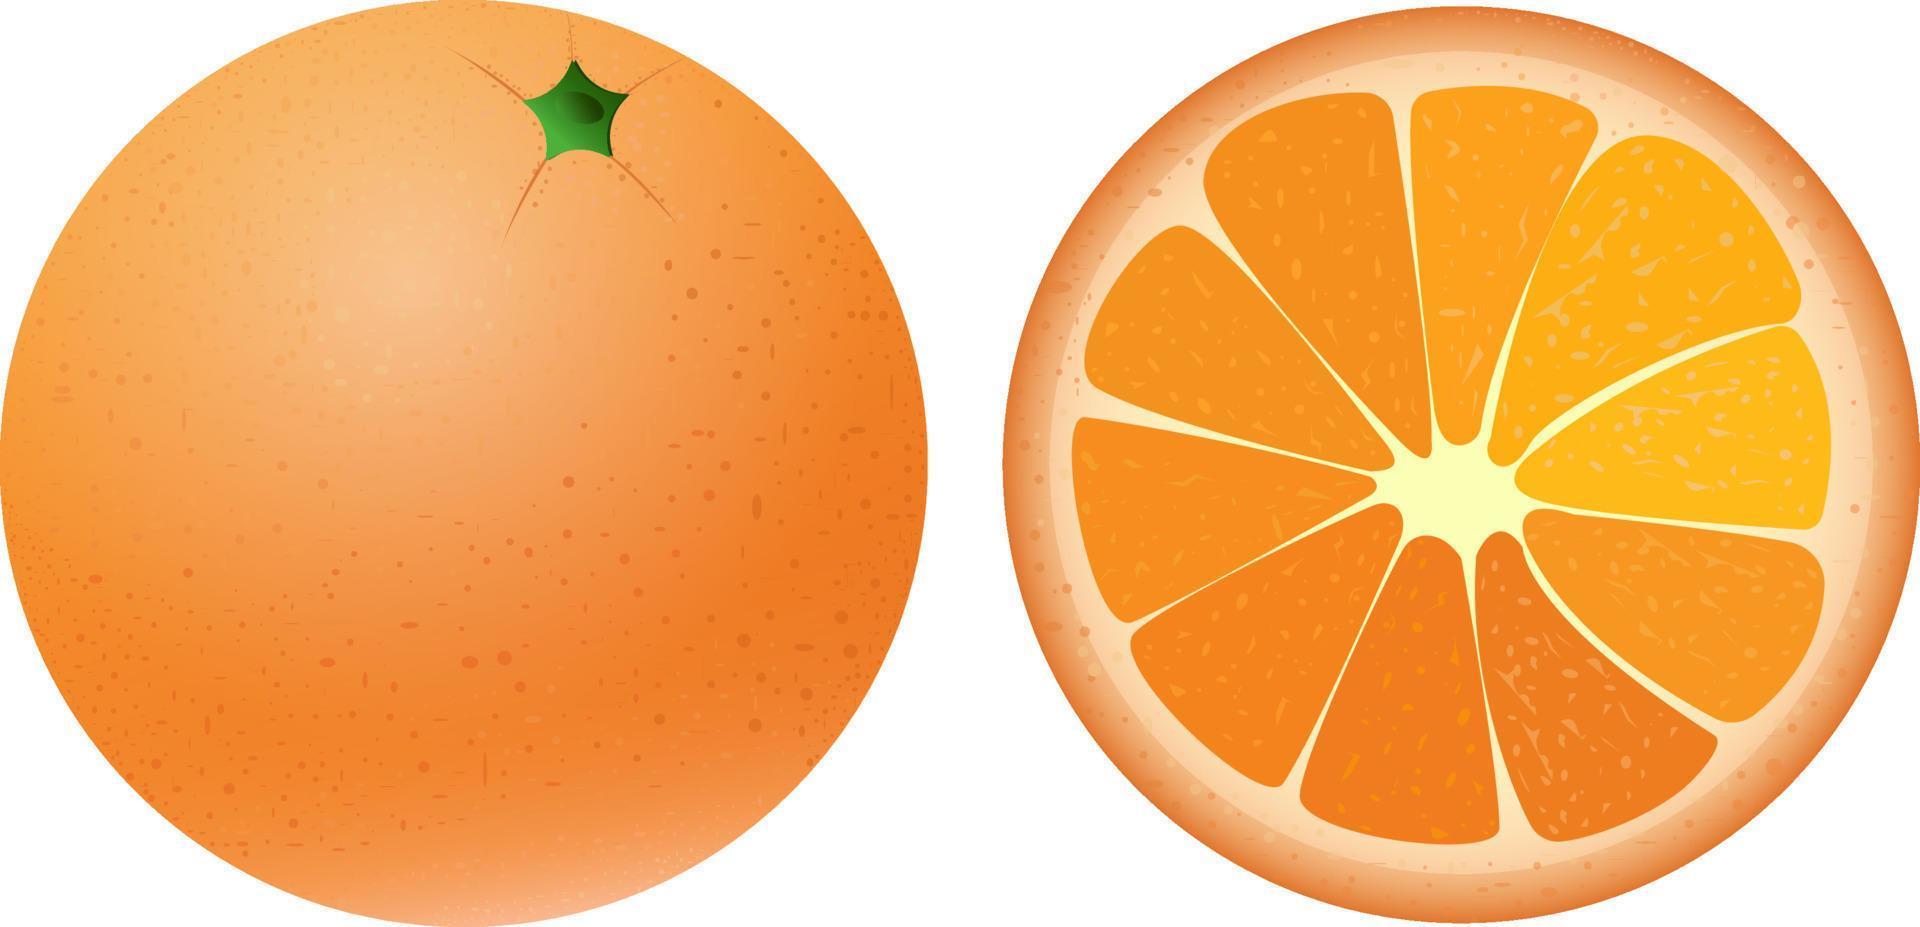 naranja jugosa brillante en toda la forma y en la sección. cítricos de verano, para zumo fresco. ilustración vectorial aislada en un fondo blanco. vector